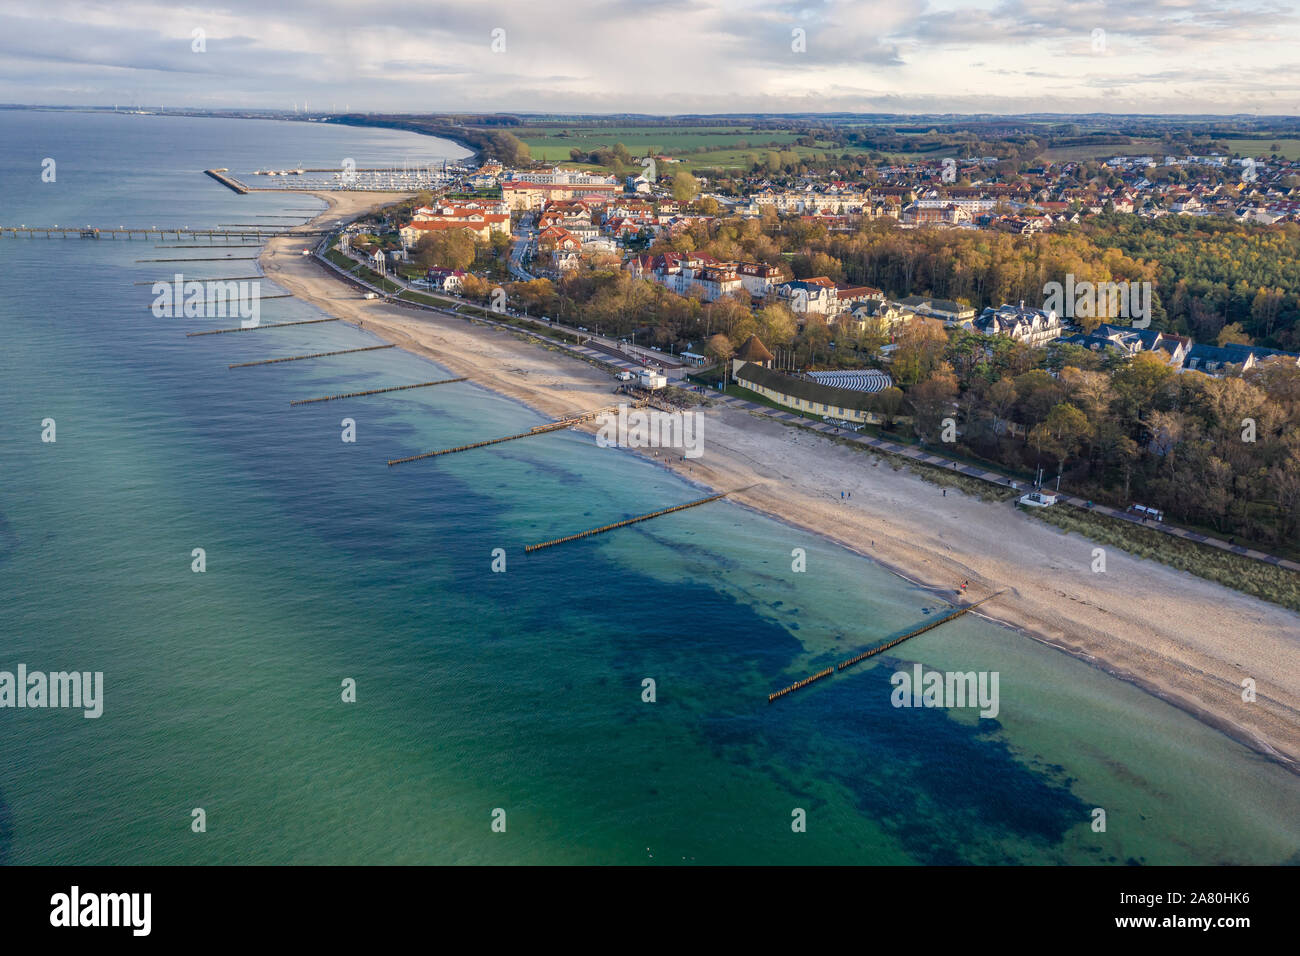 aerial view of seaside resort Kühlungsborn in Germany Stock Photo